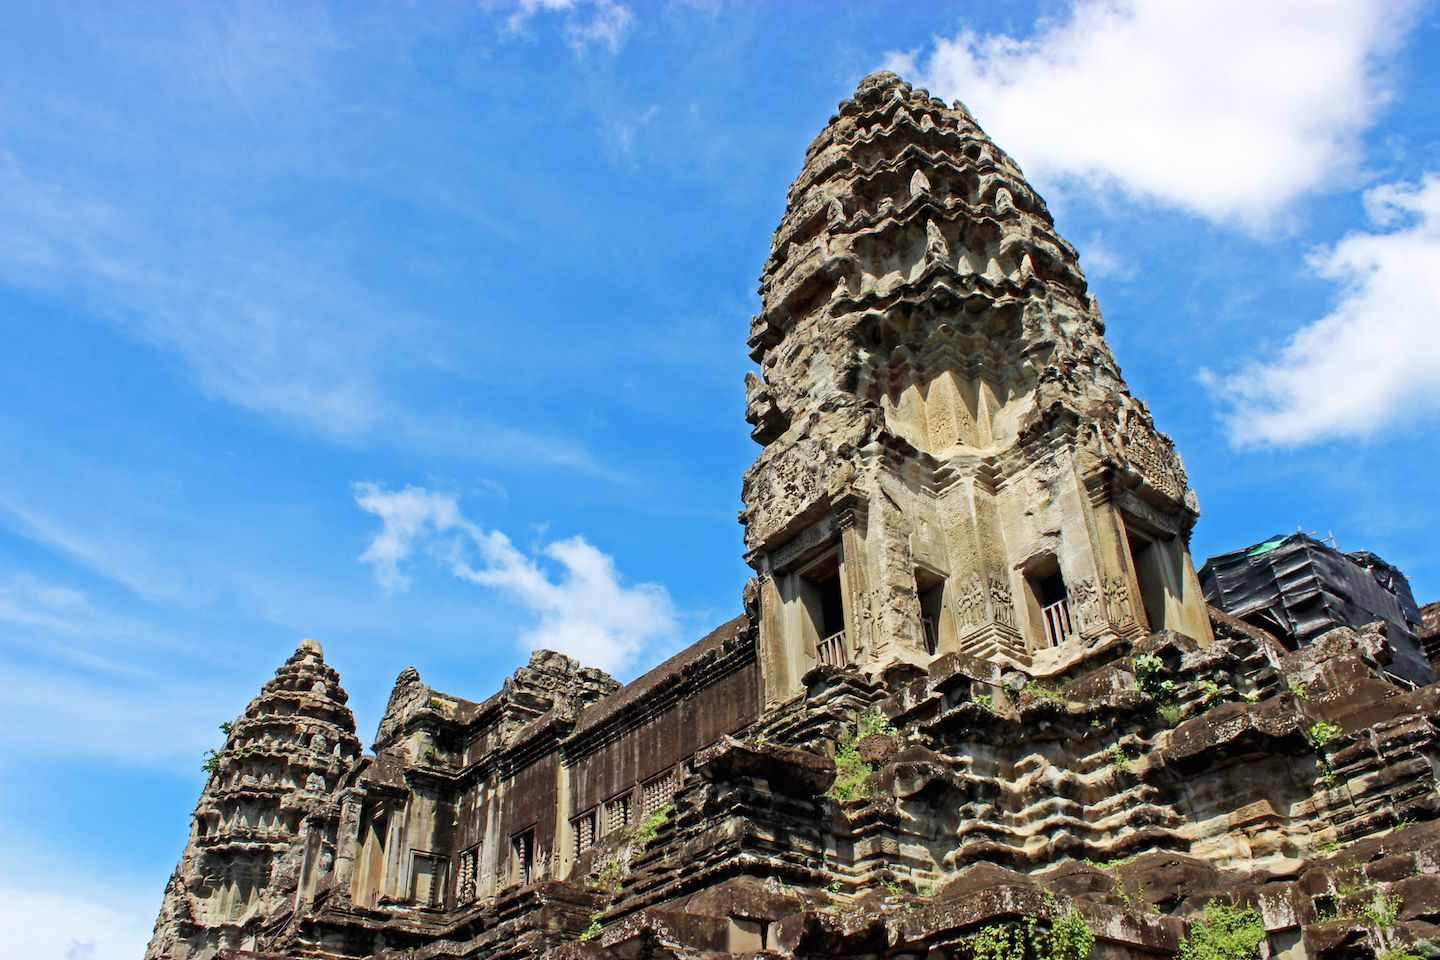 View of the prangs at Angkor Wat